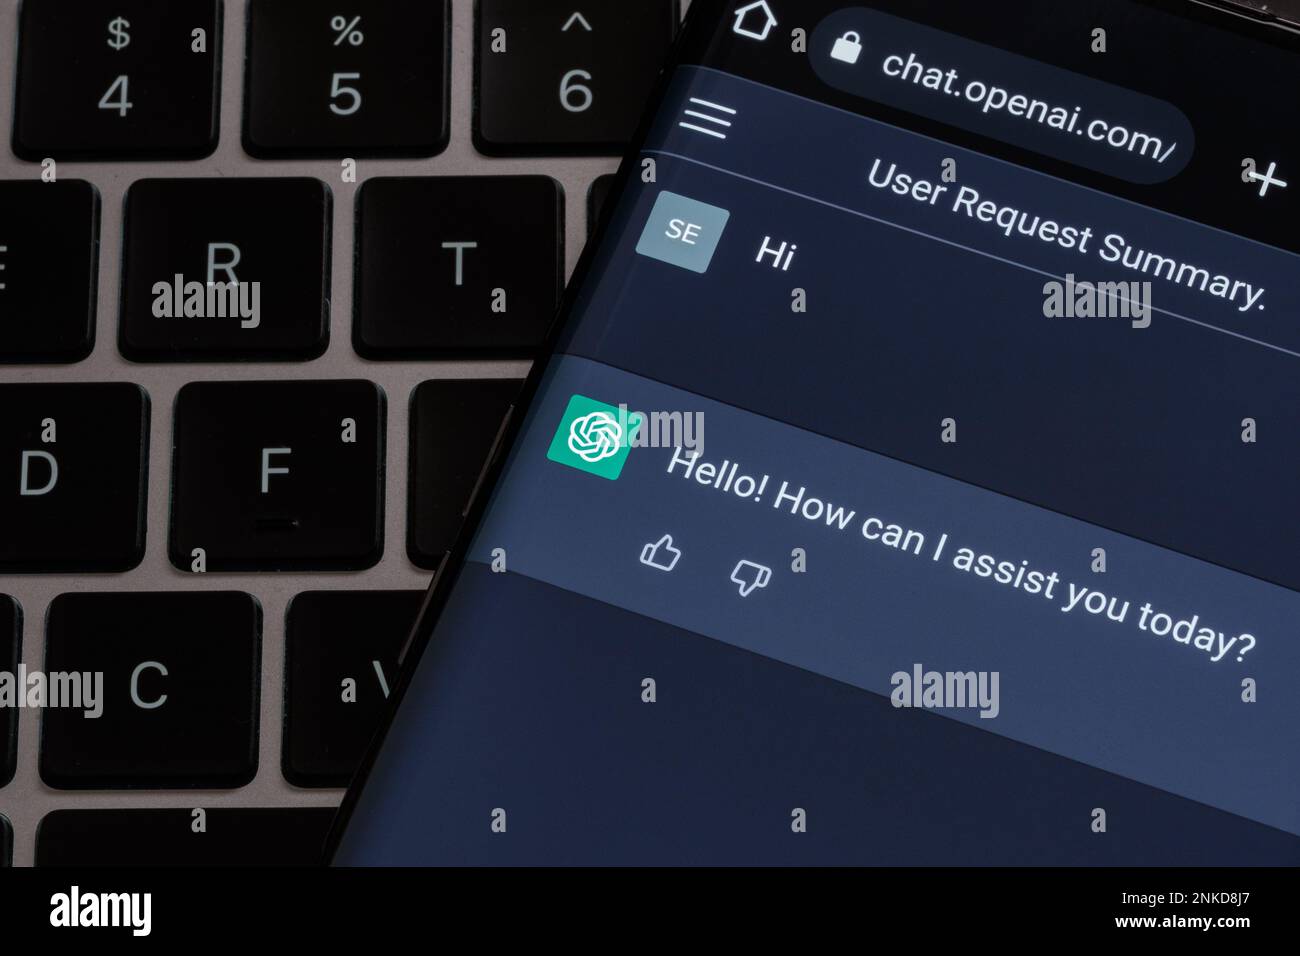 Echtes ChatGPT-Chatbot-Display auf dem Smartphone, das auf der Laptop-Tastatur platziert ist. Stafford, Großbritannien, 23. Februar 2023 Stockfoto